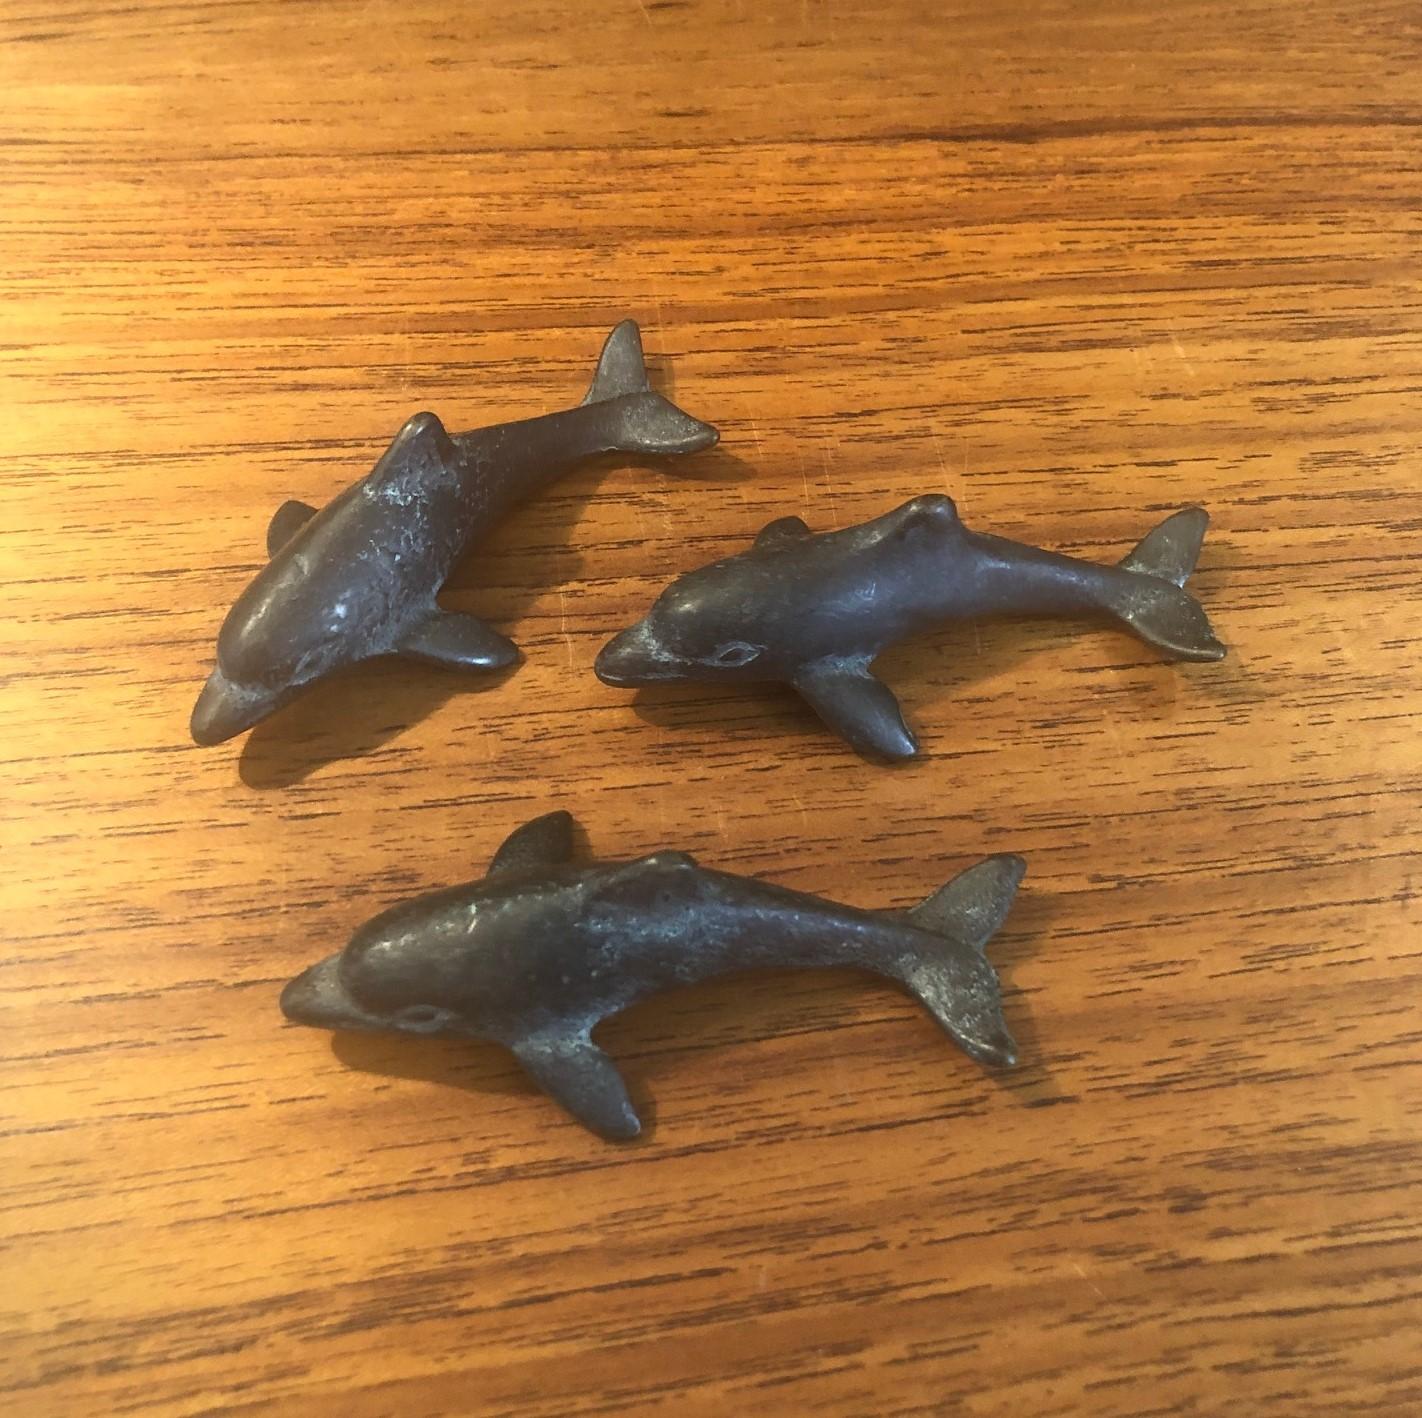 Ensemble de trois dauphins japonais miniatures en bronze, vers les années 1970. Les dauphins mesurent environ 2,75